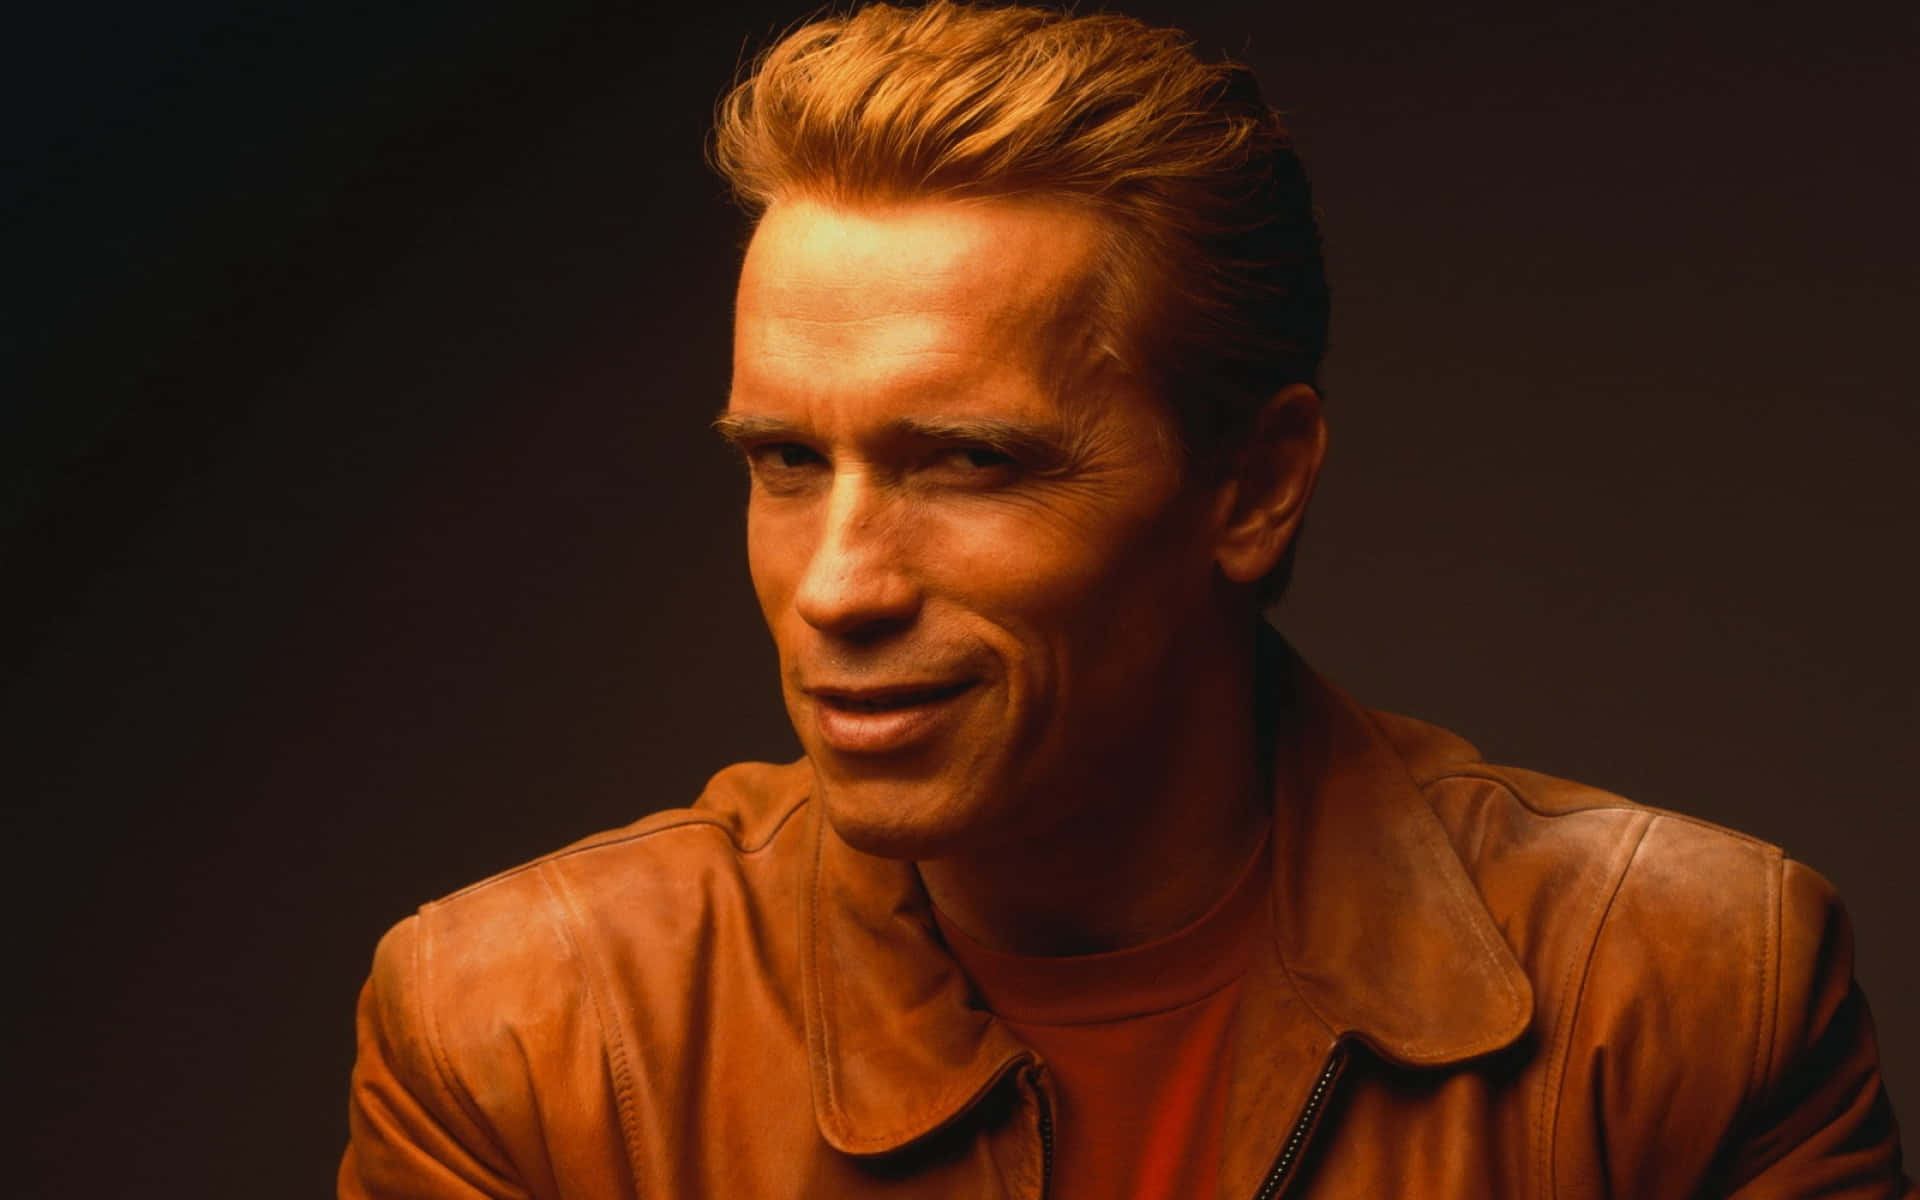 Legendärerschauspieler Und Ehemaliger Gouverneur Arnold Schwarzenegger